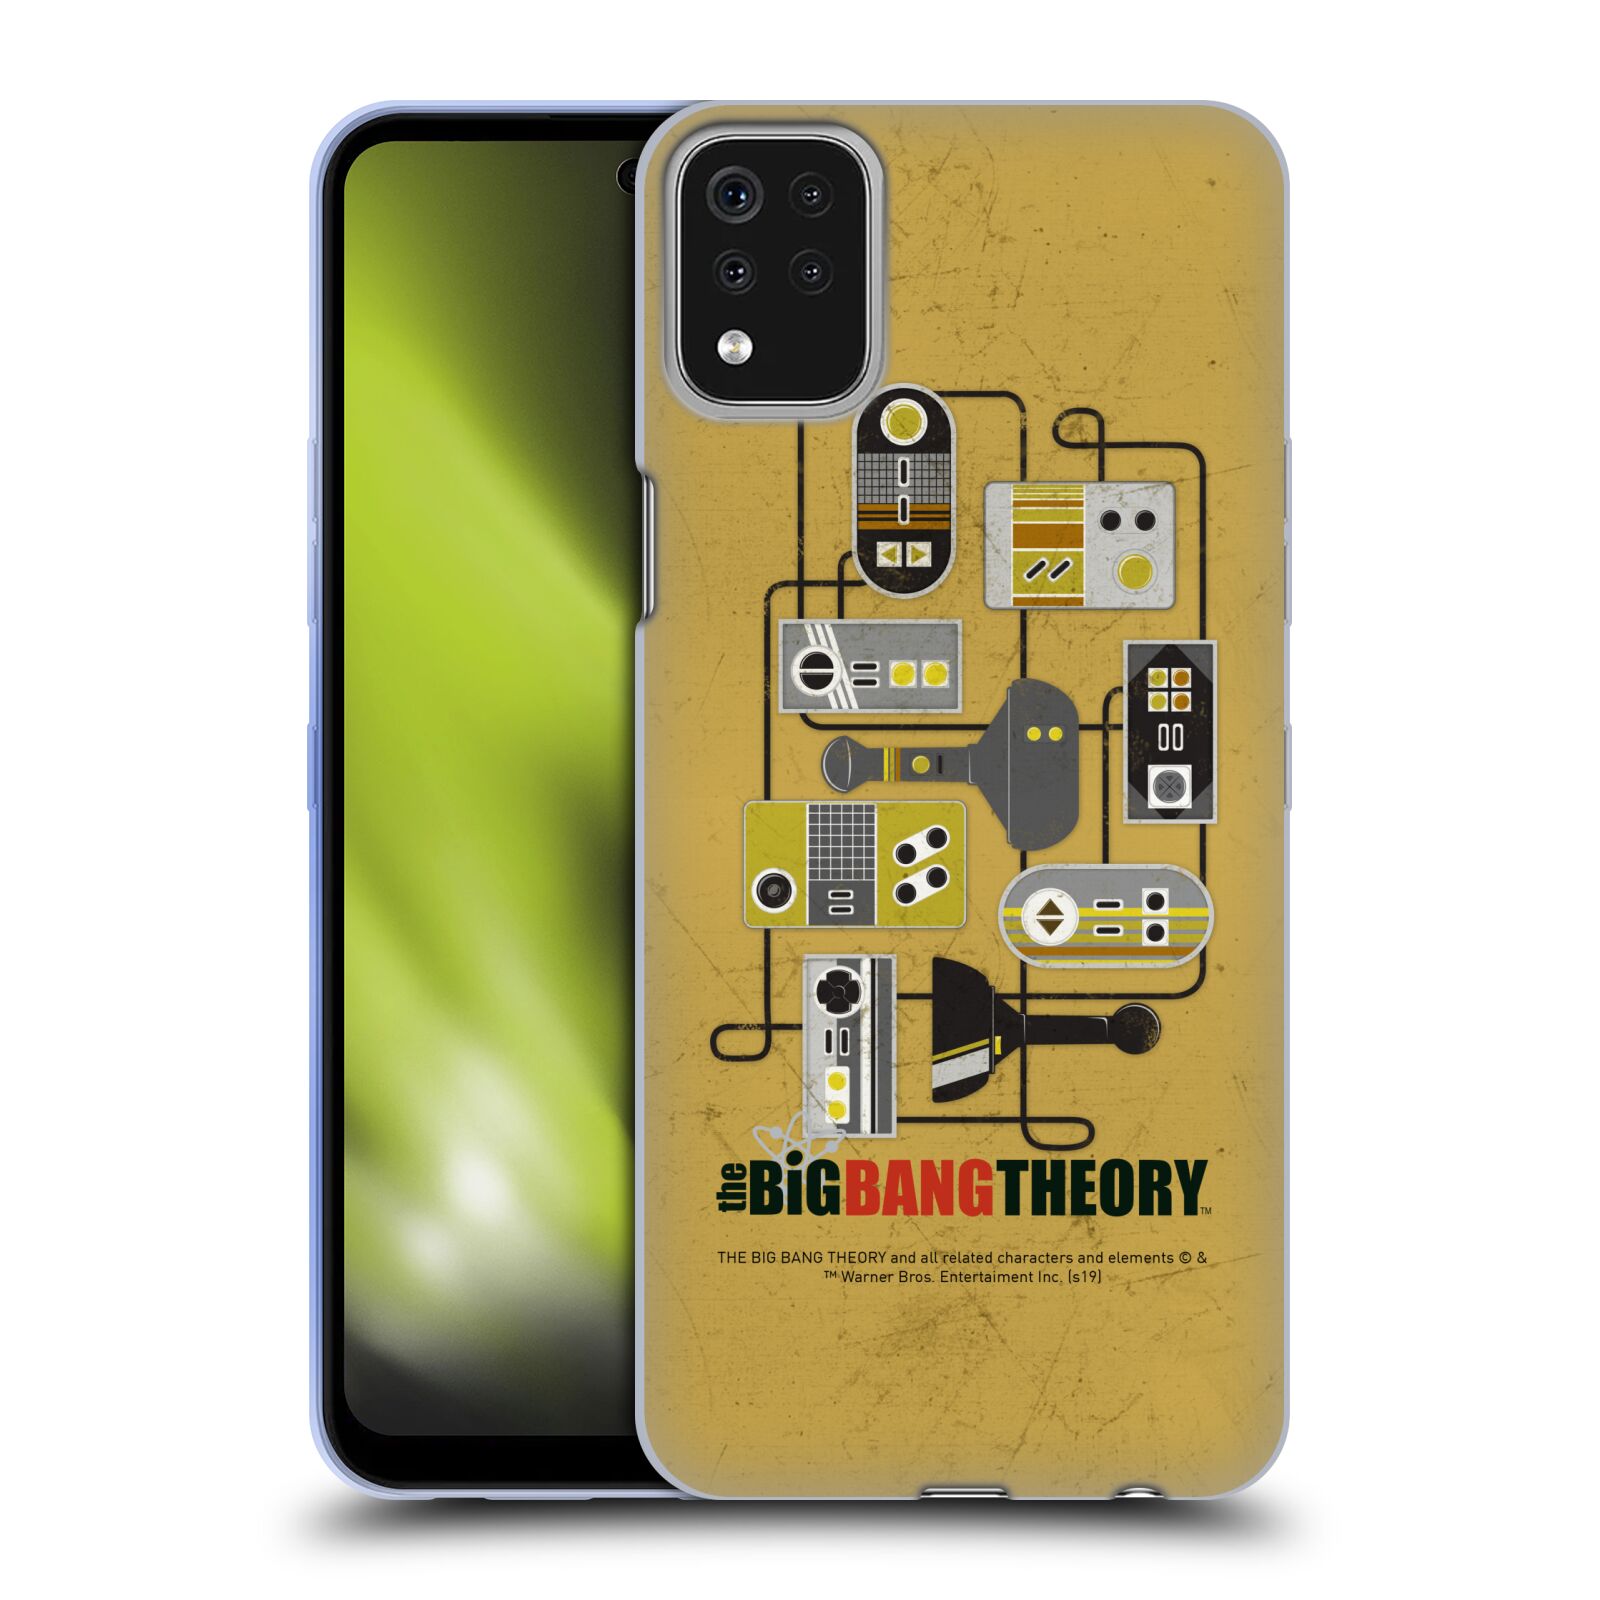 公式ライセンス The Big Bang Theory グラフィックアート ソフトジェルケース LG 電話 スマホケース